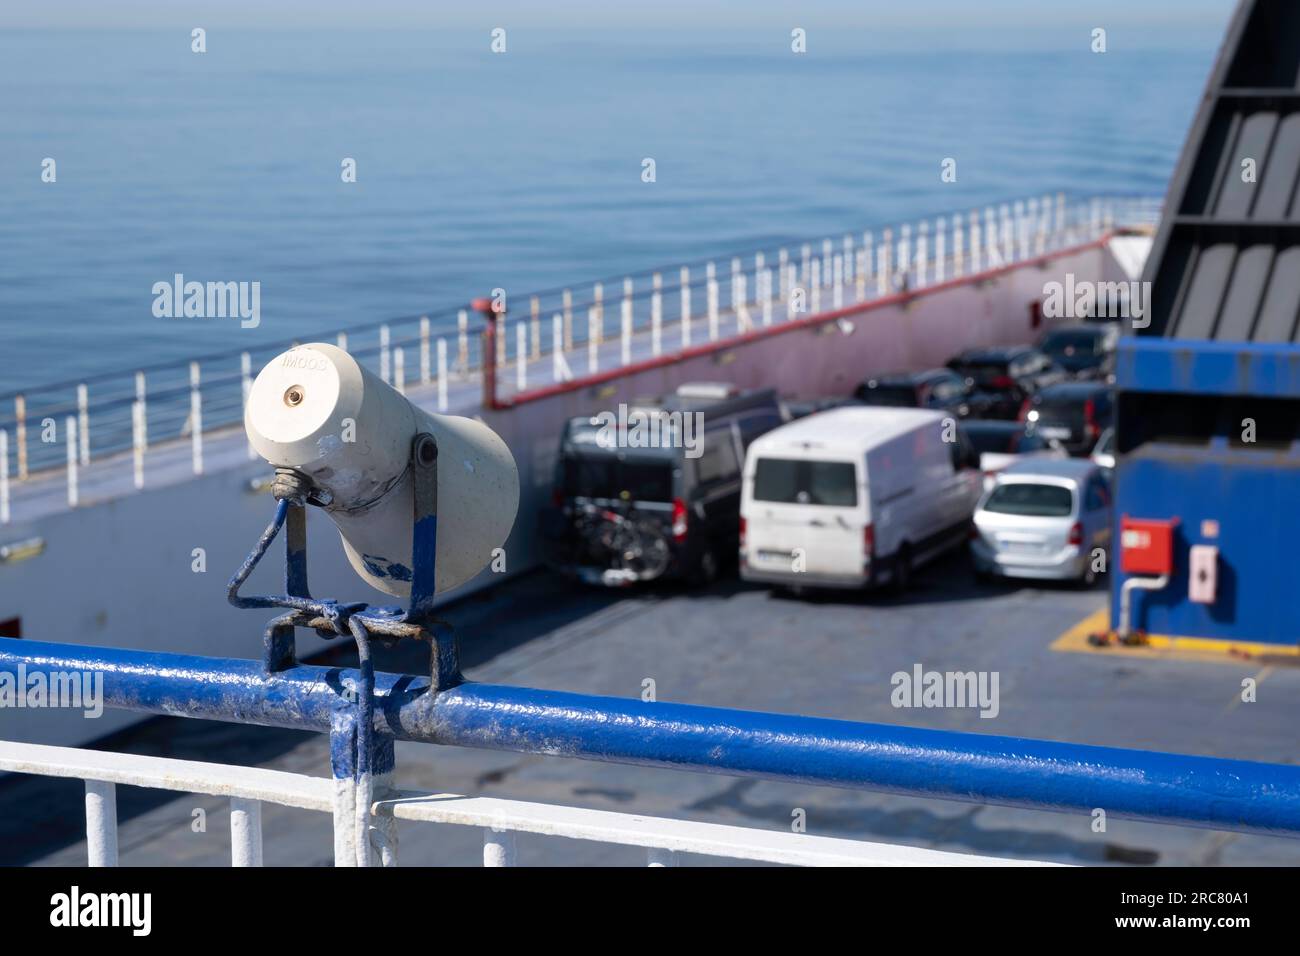 Lautsprecher am Geländer eines Fährschiffes, die dazu bestimmt sind, den Passagieren während der Fahrt Durchsagen zu machen Stockfoto